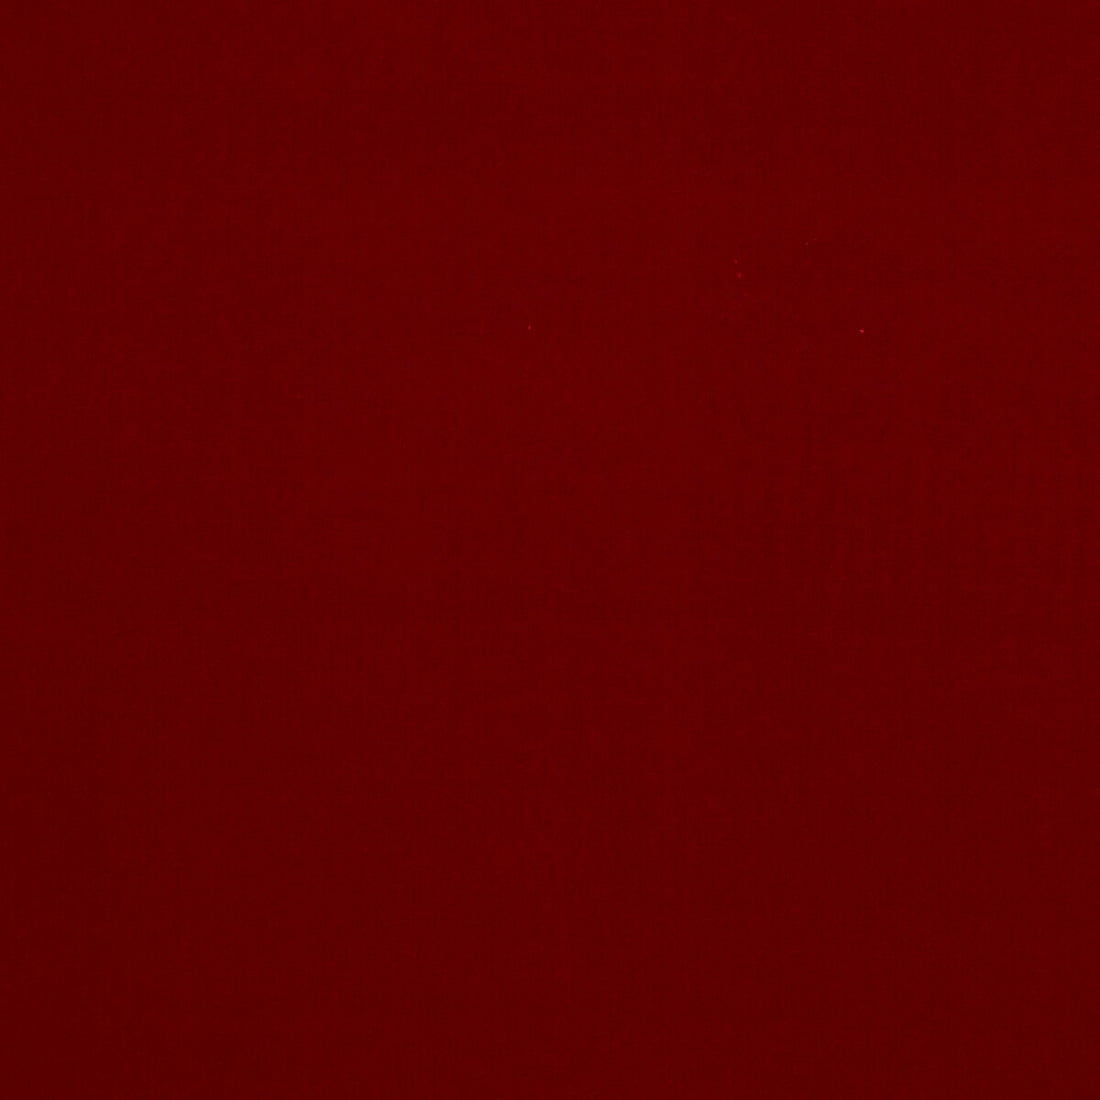 Baker House Velvet fabric in red color - pattern BF10838.450.0 - by G P &amp; J Baker in the Baker House Velvet collection